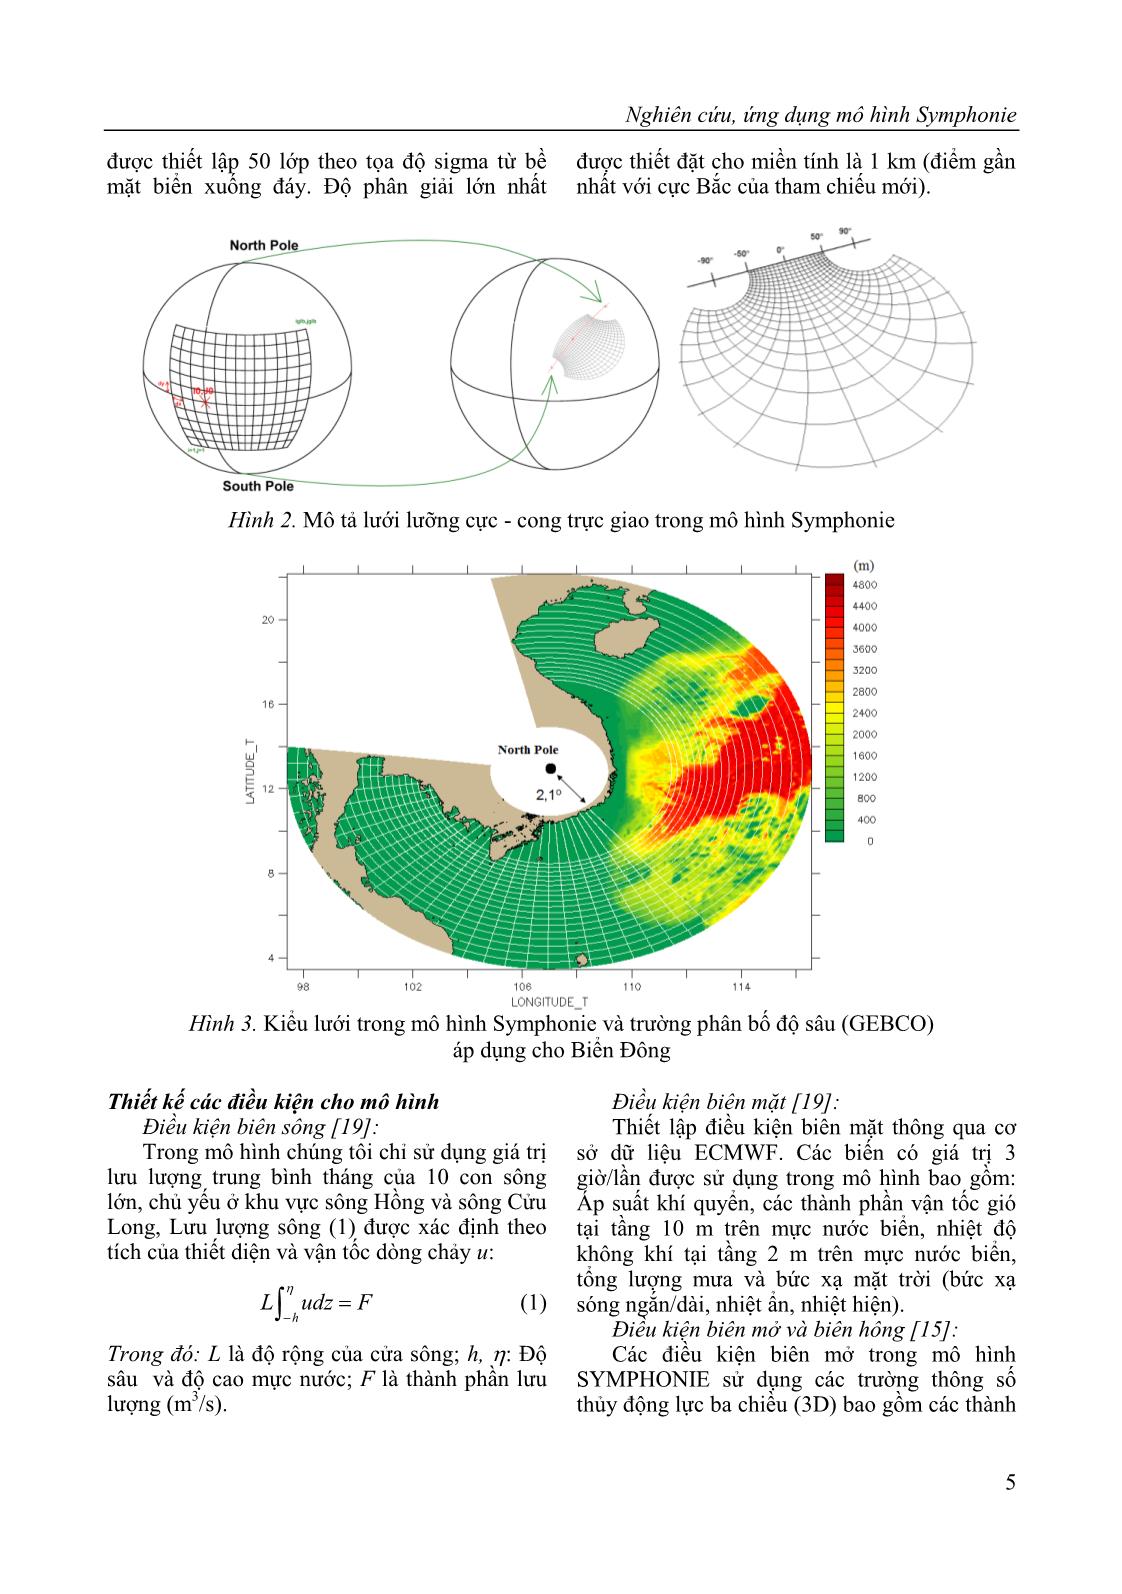 Nghiên cứu, ứng dụng mô hình Symphonie tính toán các quá trình thủy động lực trên Biển Đông trang 5